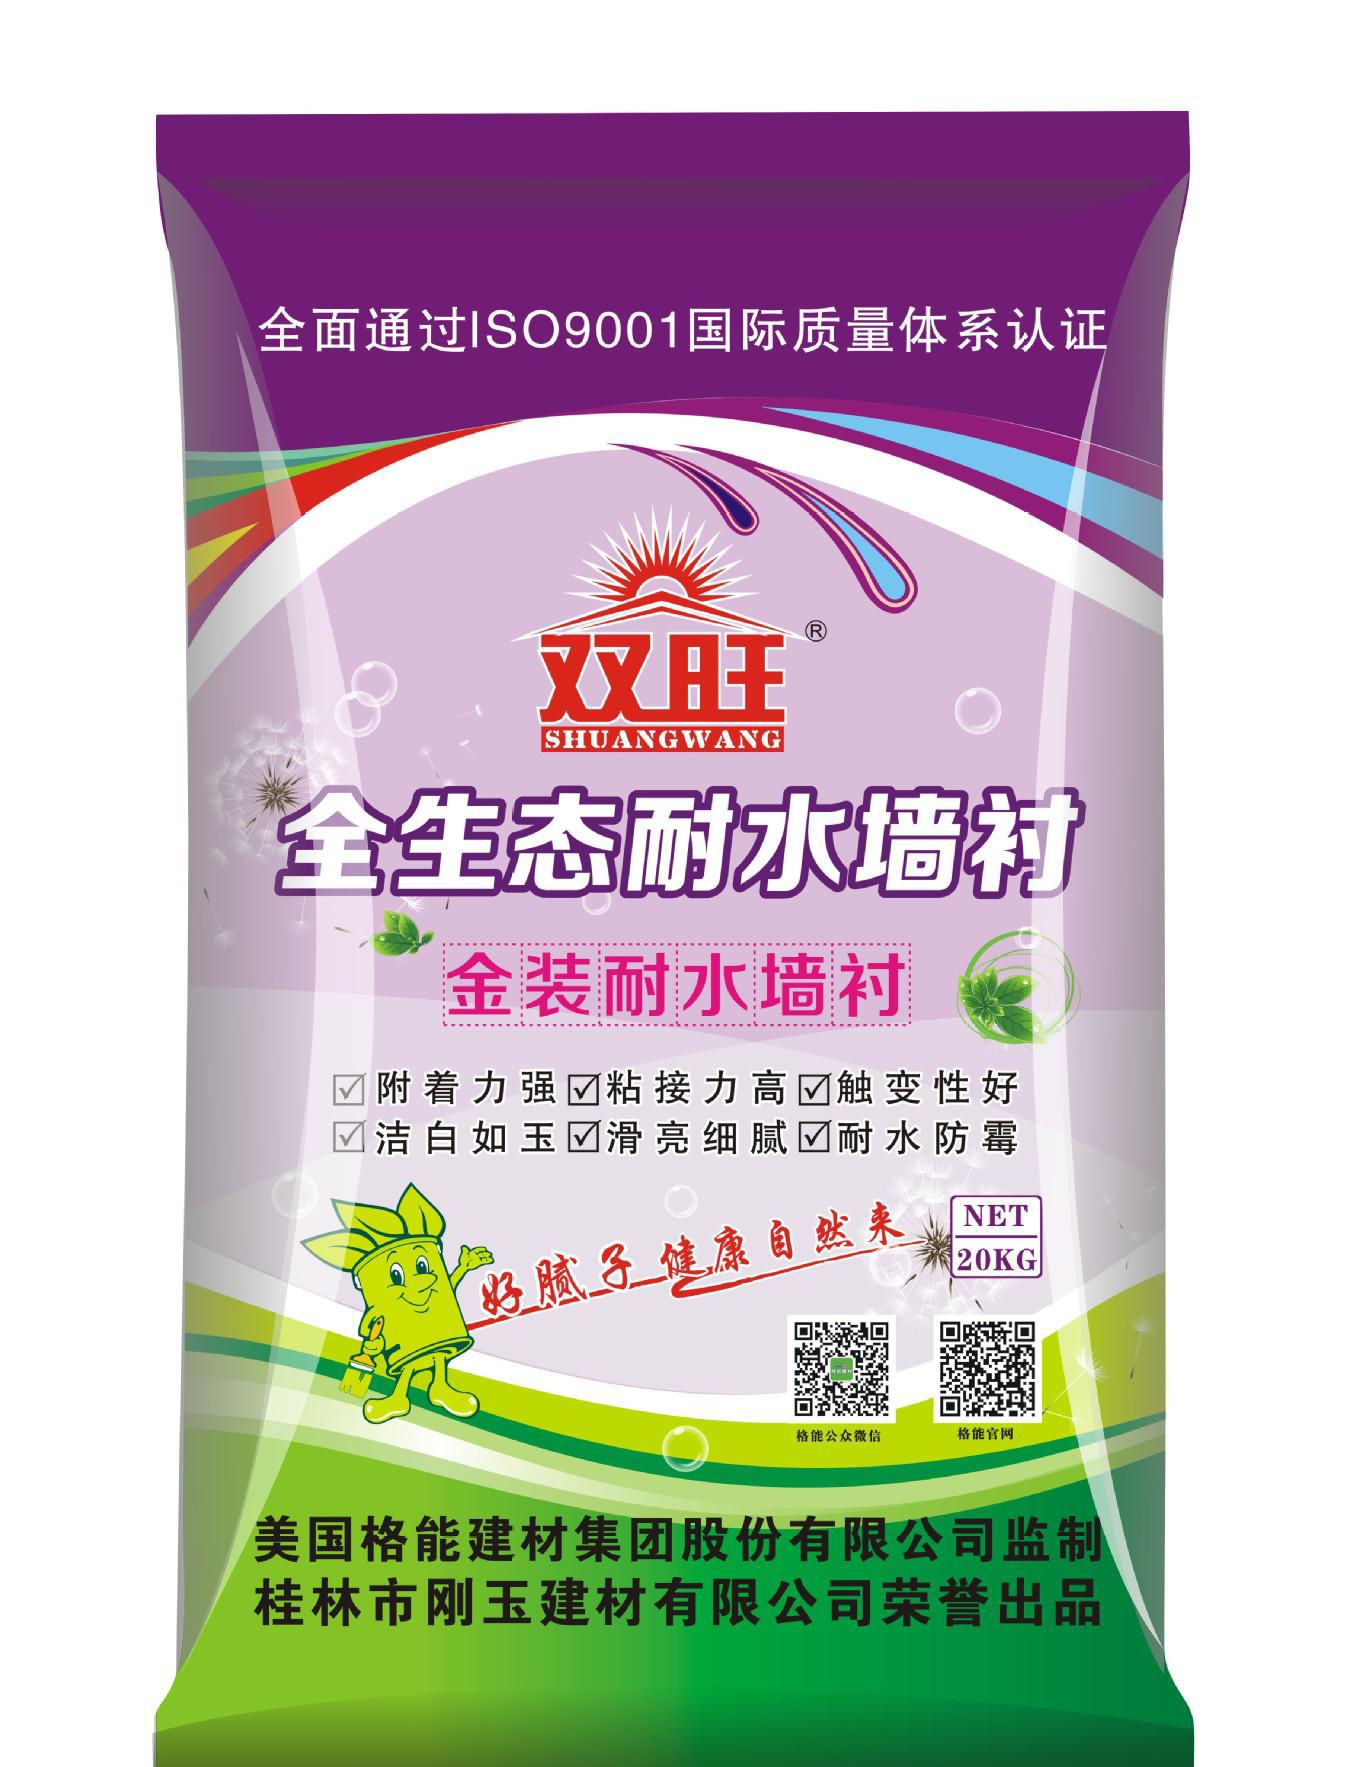 广东惠州腻子粉专业生产批发 广西刚玉腻子粉惠州招经销商